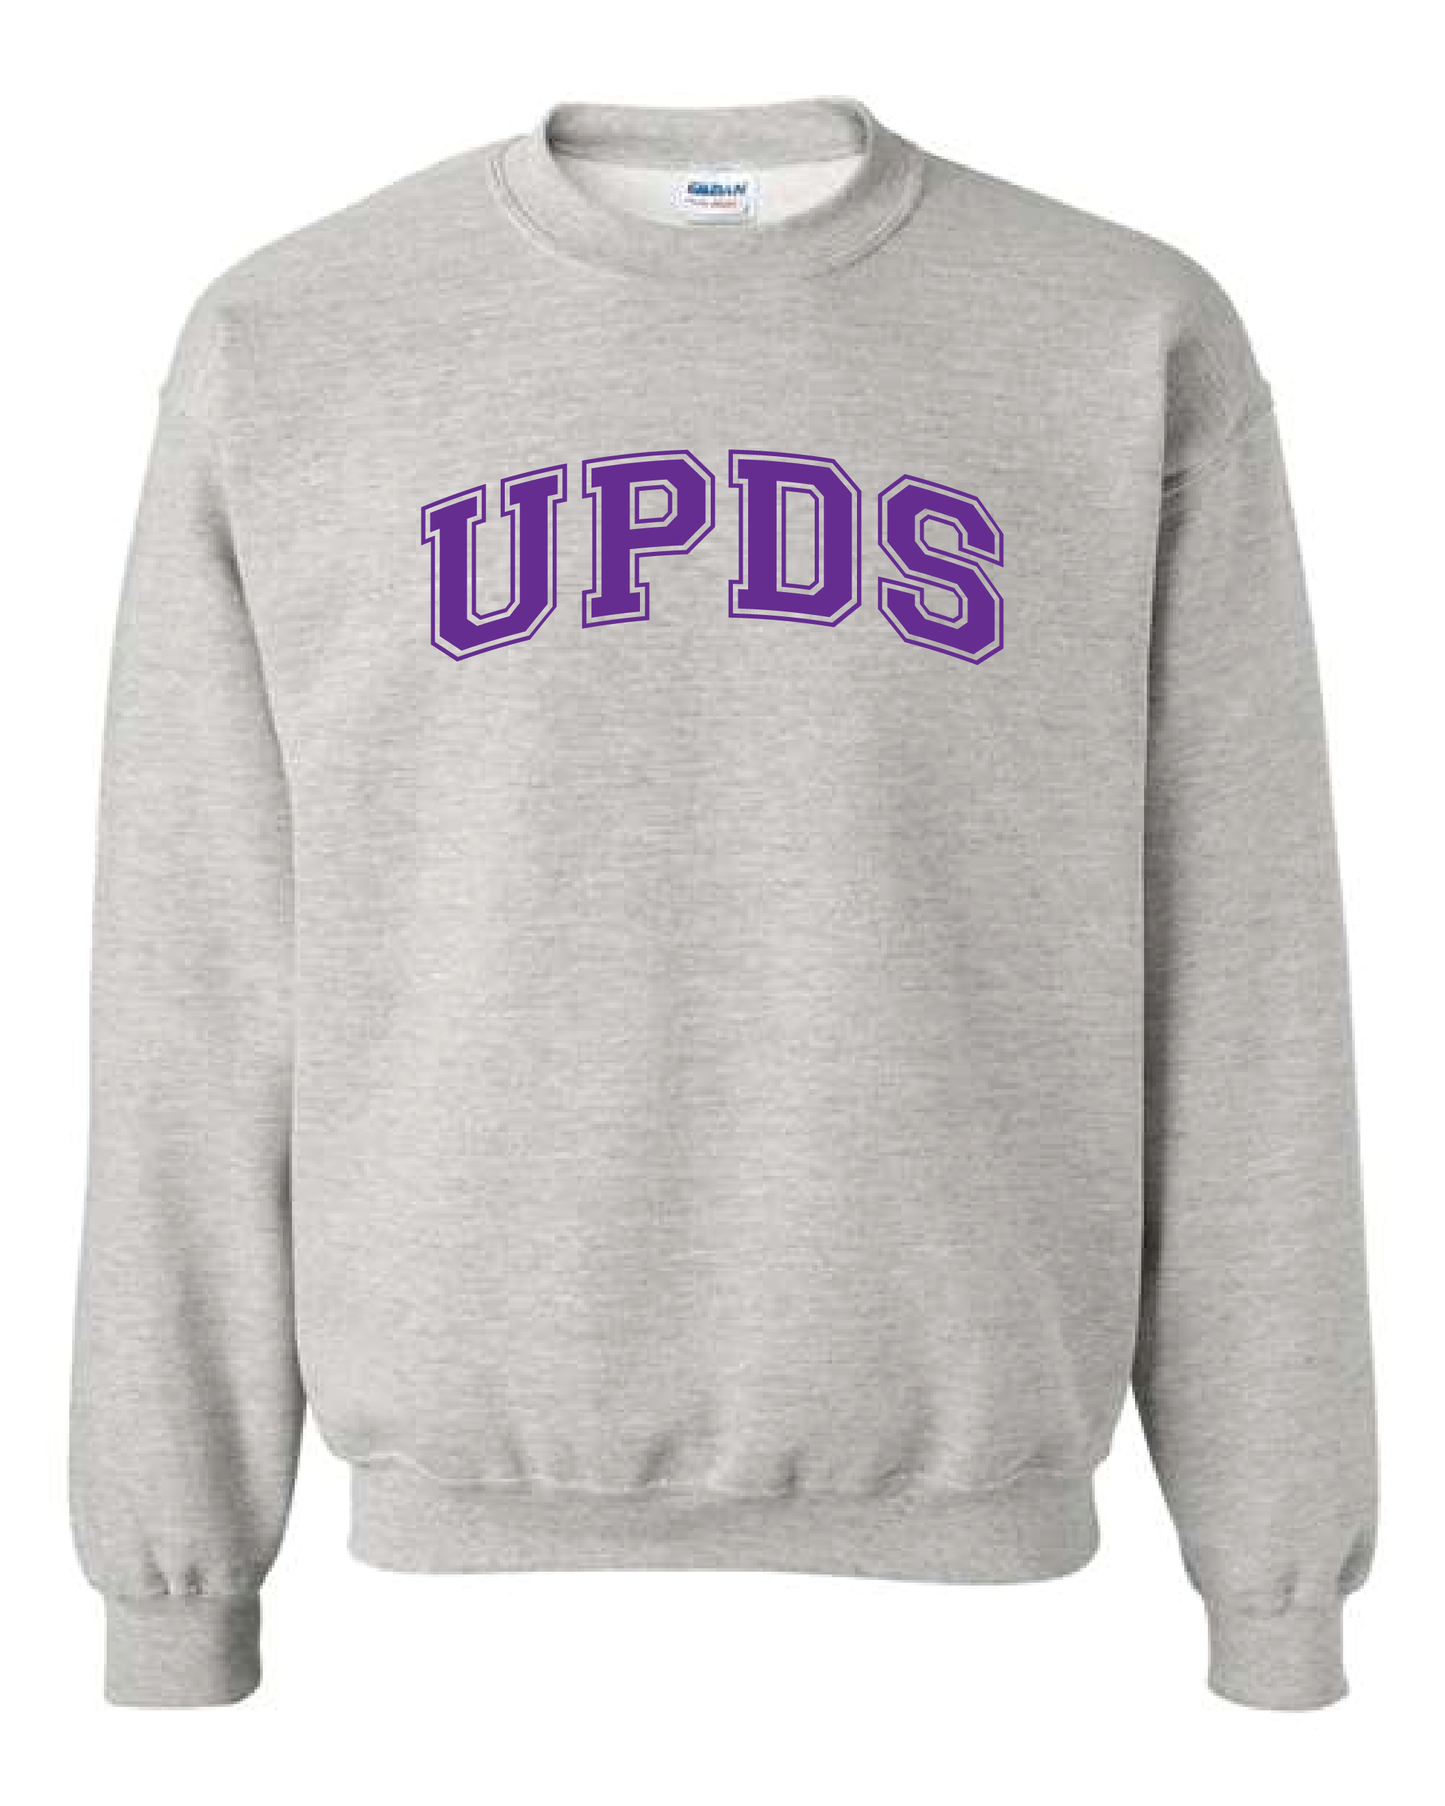 UPDS Collegiate Crew